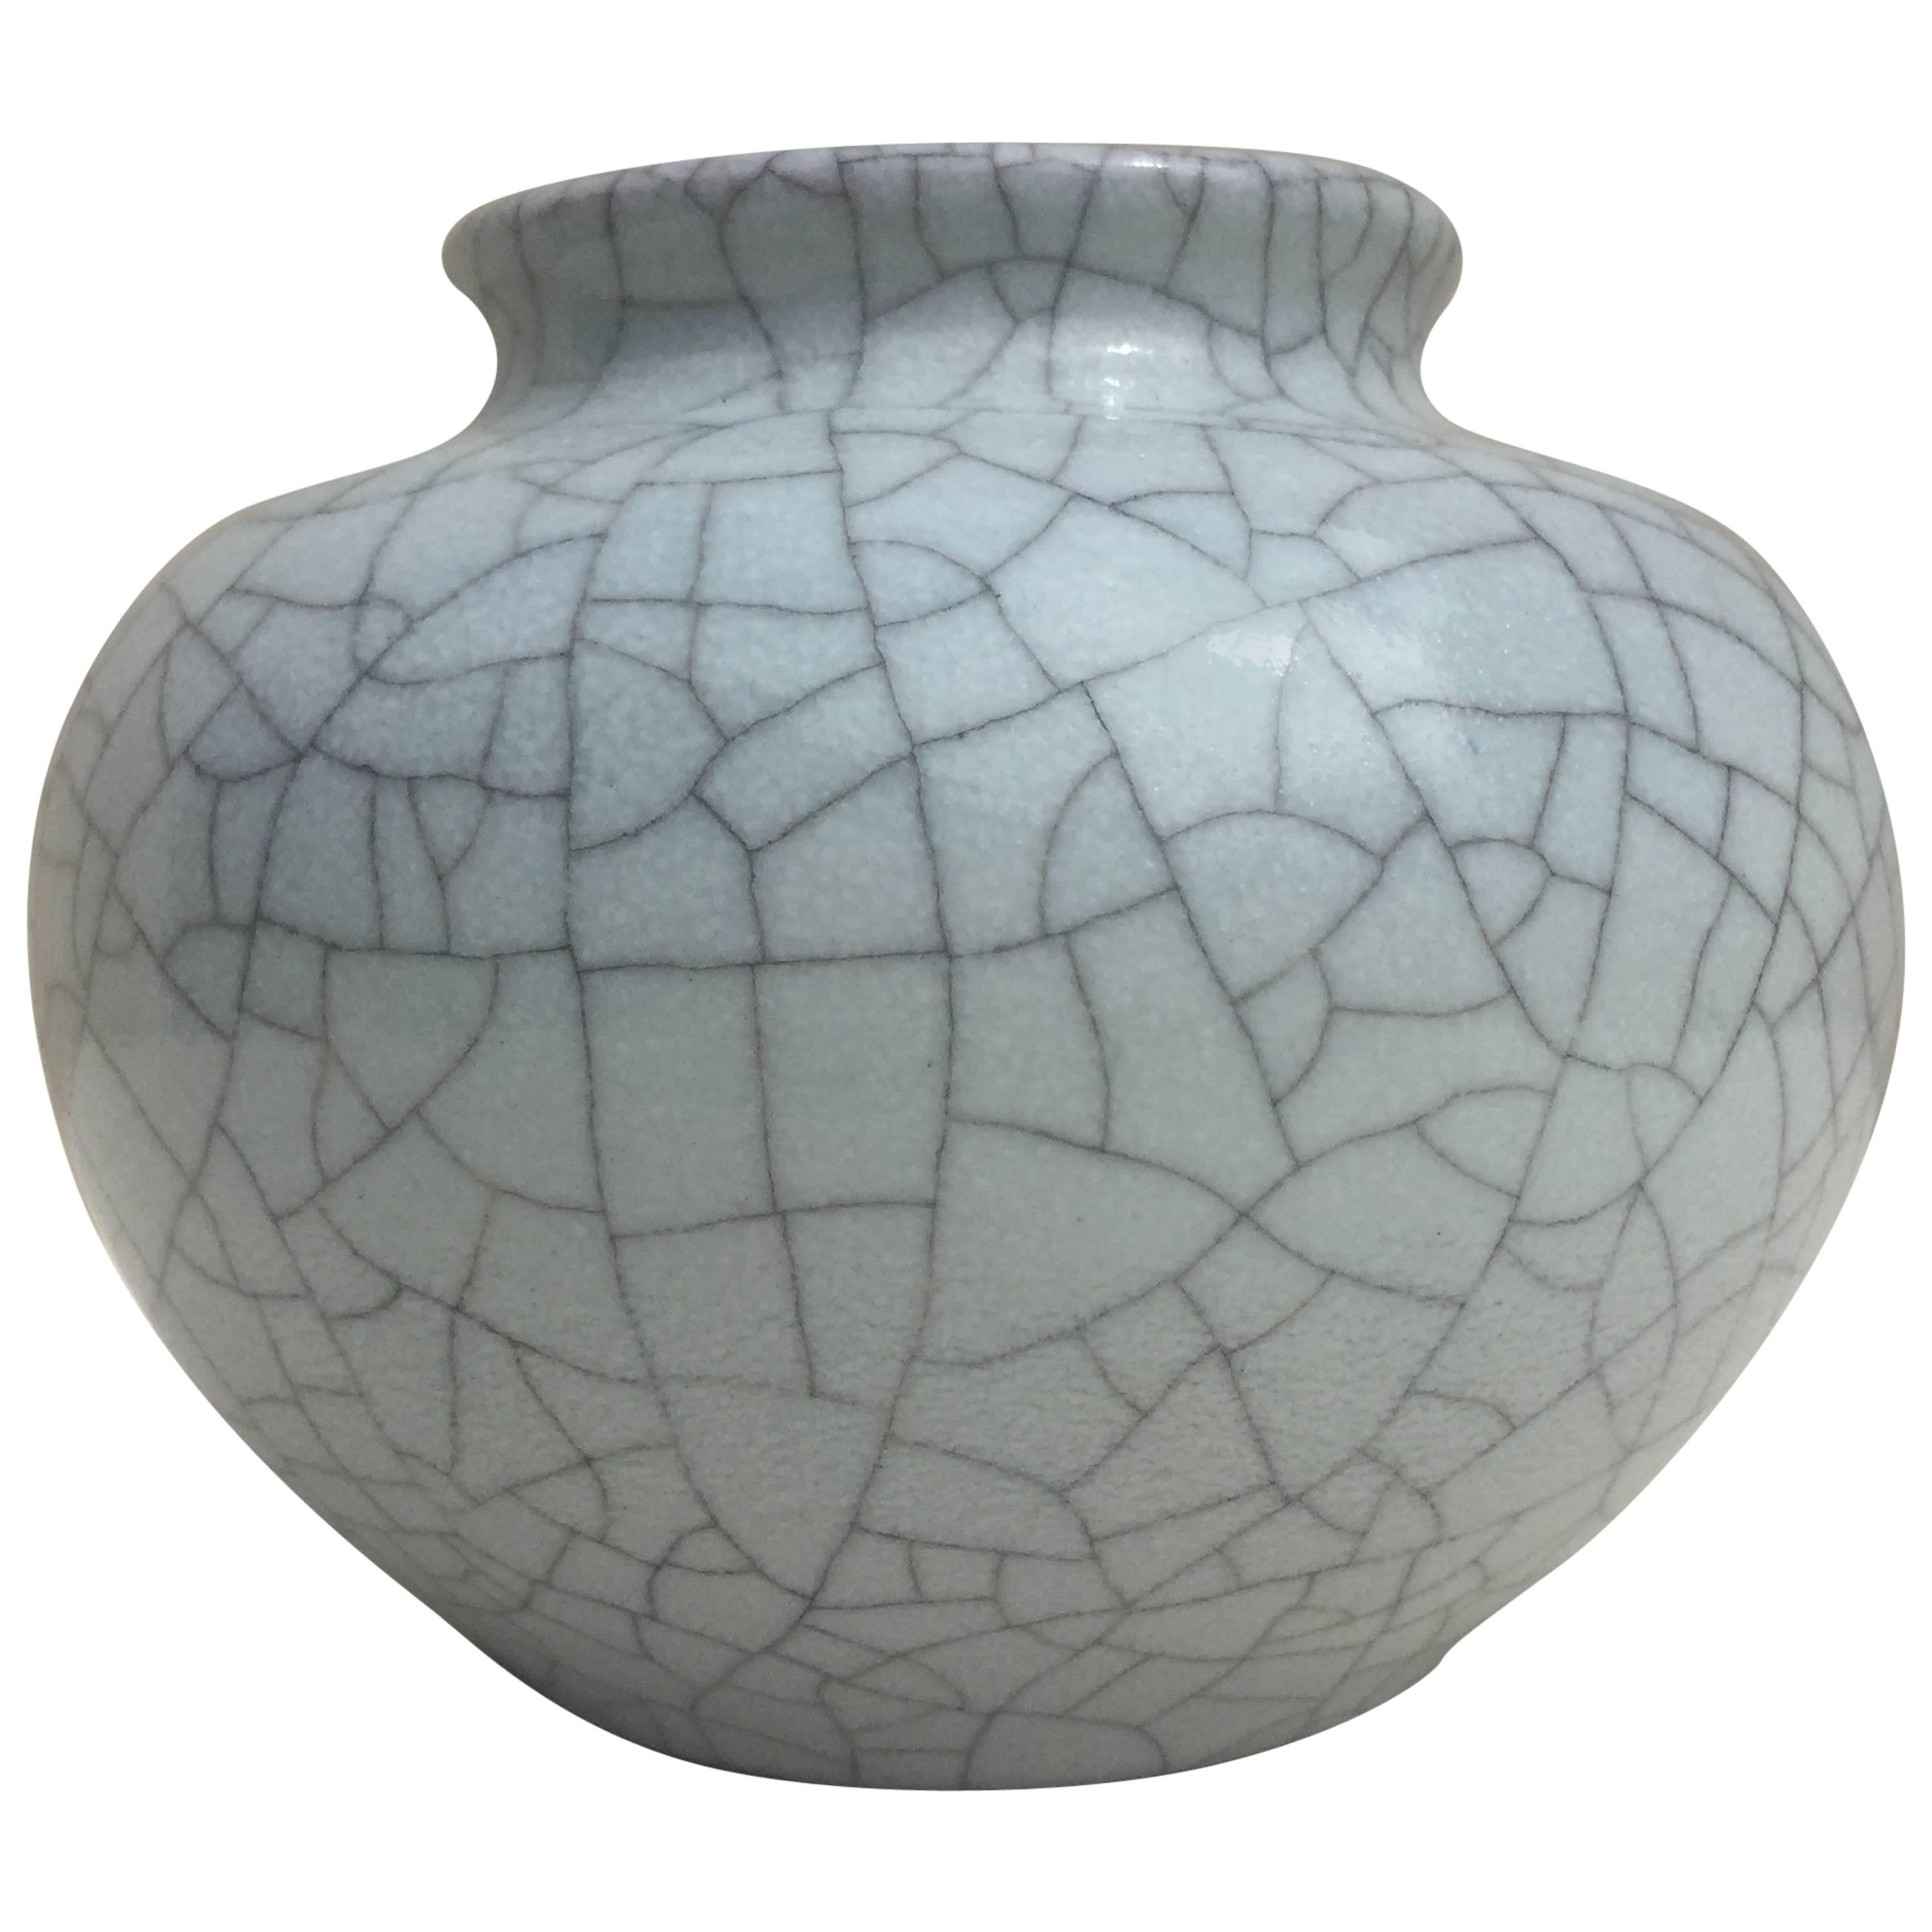 Spherical Vase by Karlsruhe Majolica Glatzle 1970s in Grey Crackled Glaze For Sale